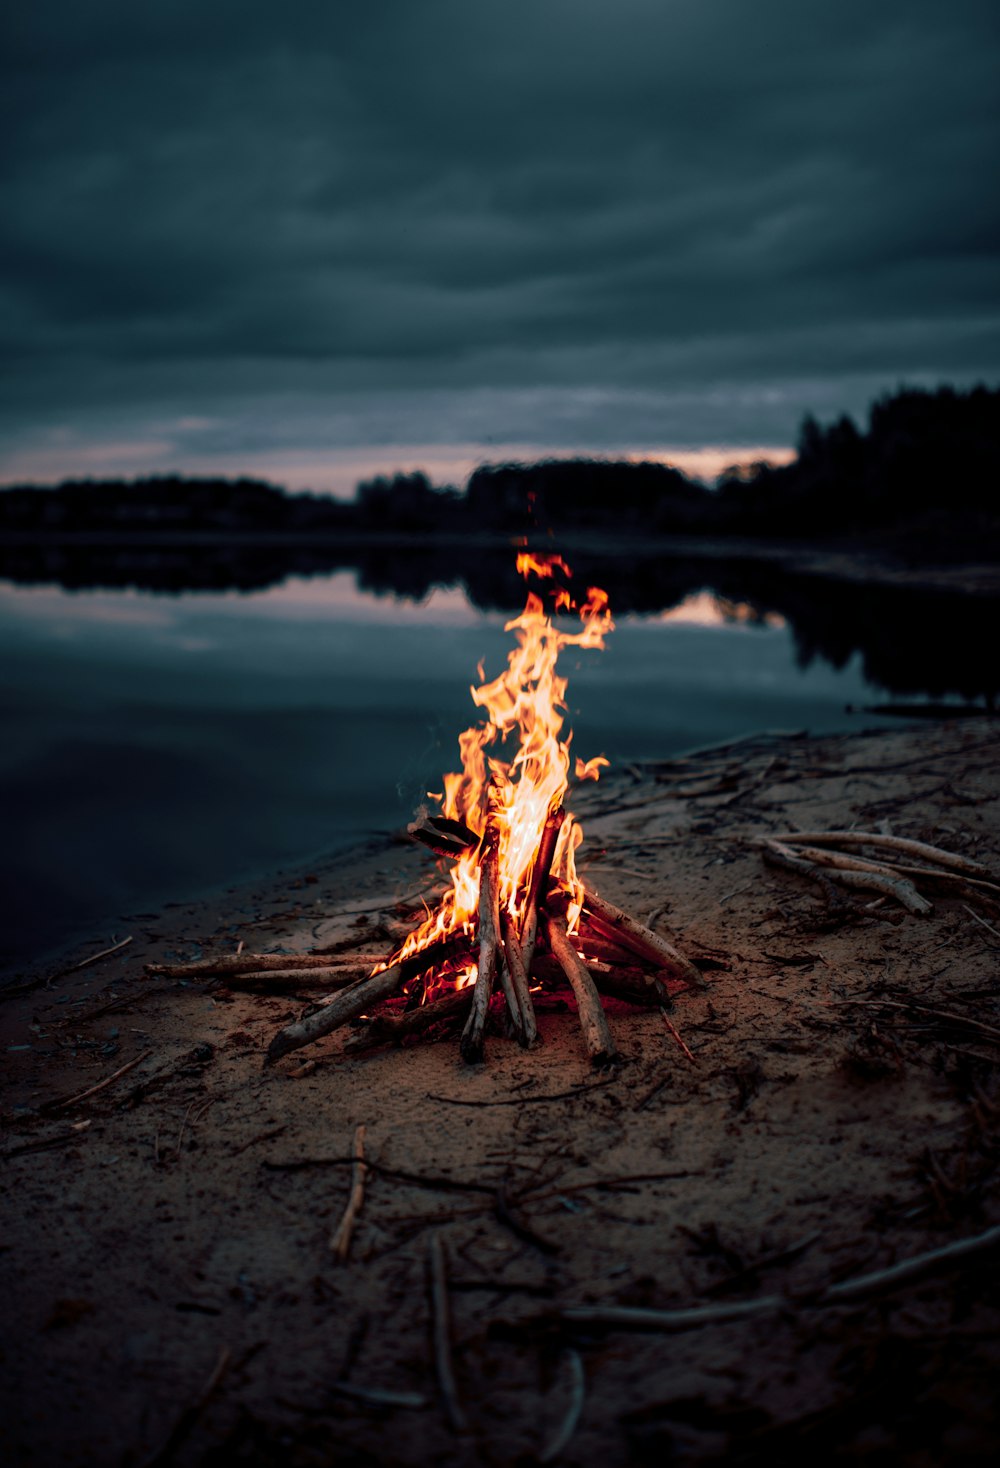 Lagerfeuer in der Nähe von Gewässern während der Nachtzeit